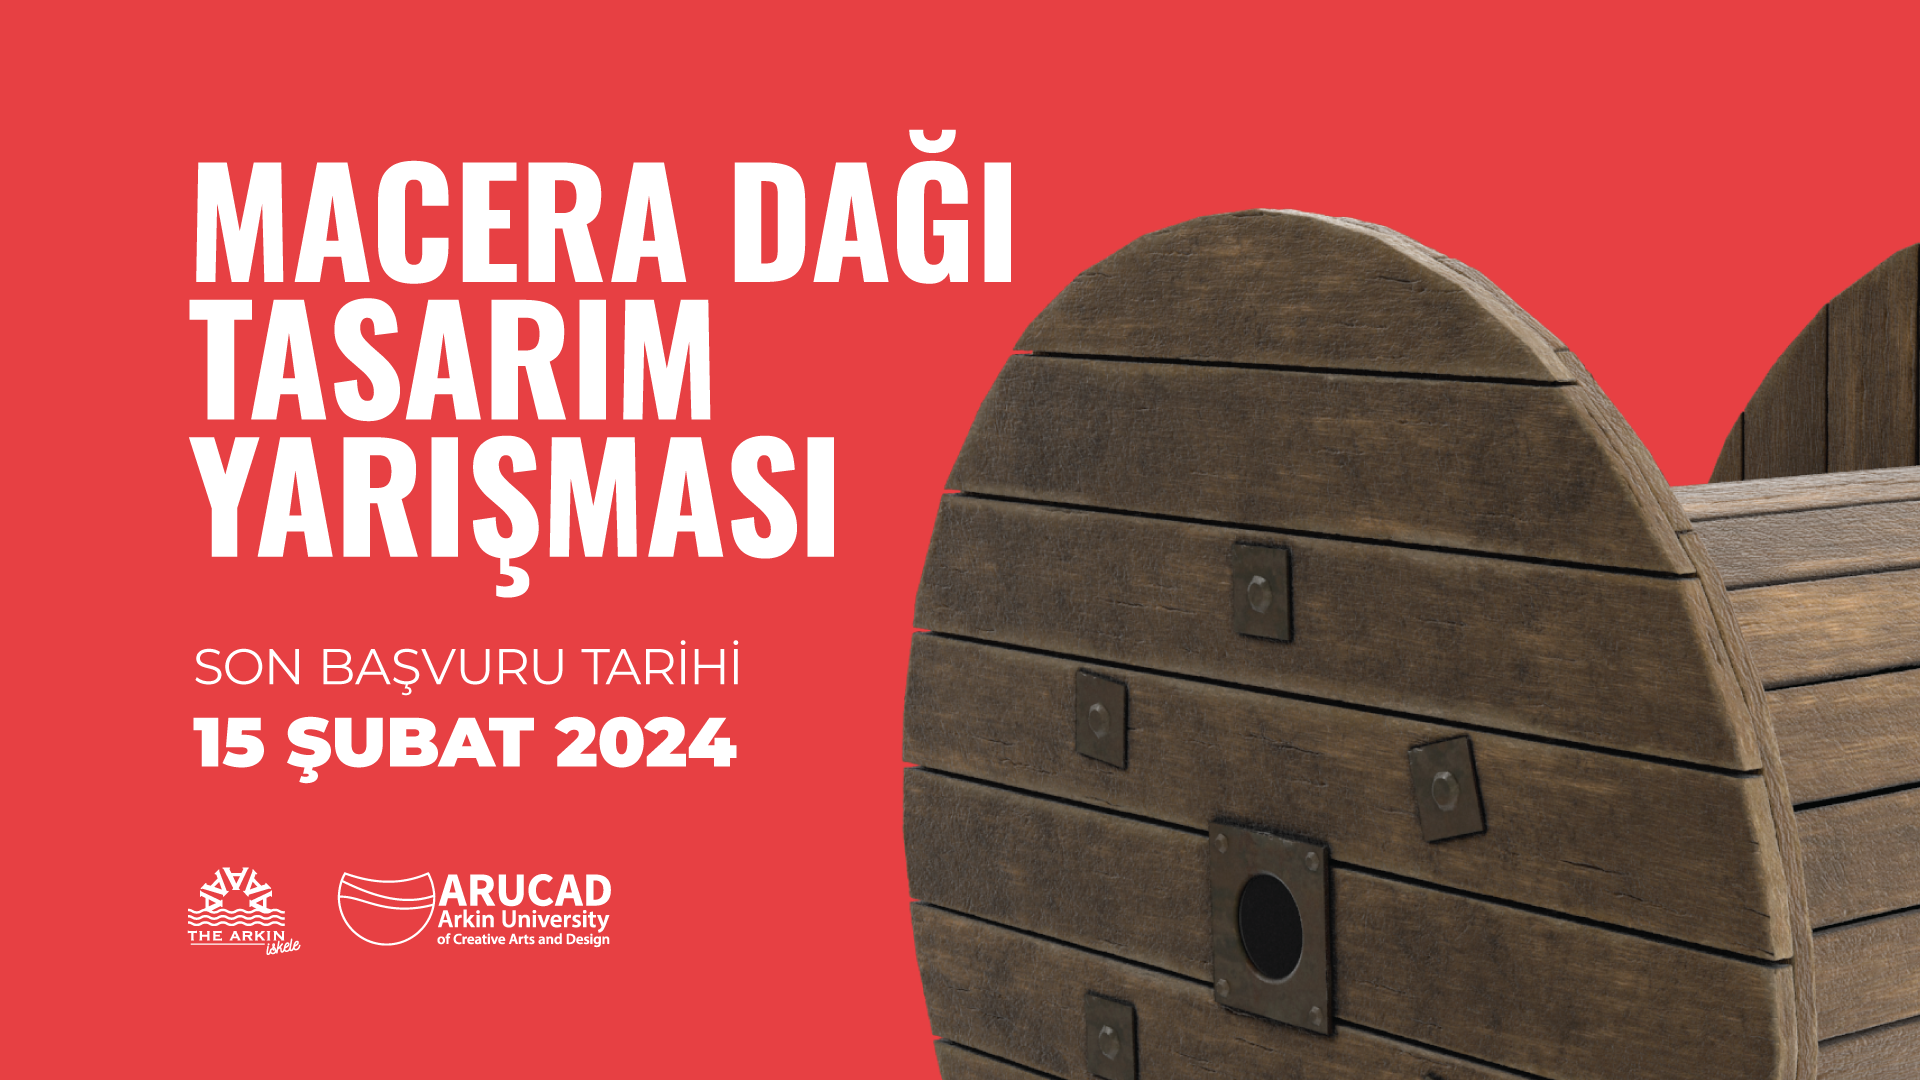 ARUCAD ve Arkın İskele Otel  İşbirliğinde "Macera Dağı" başlıklı  tasarım yarışması düzenleniyor